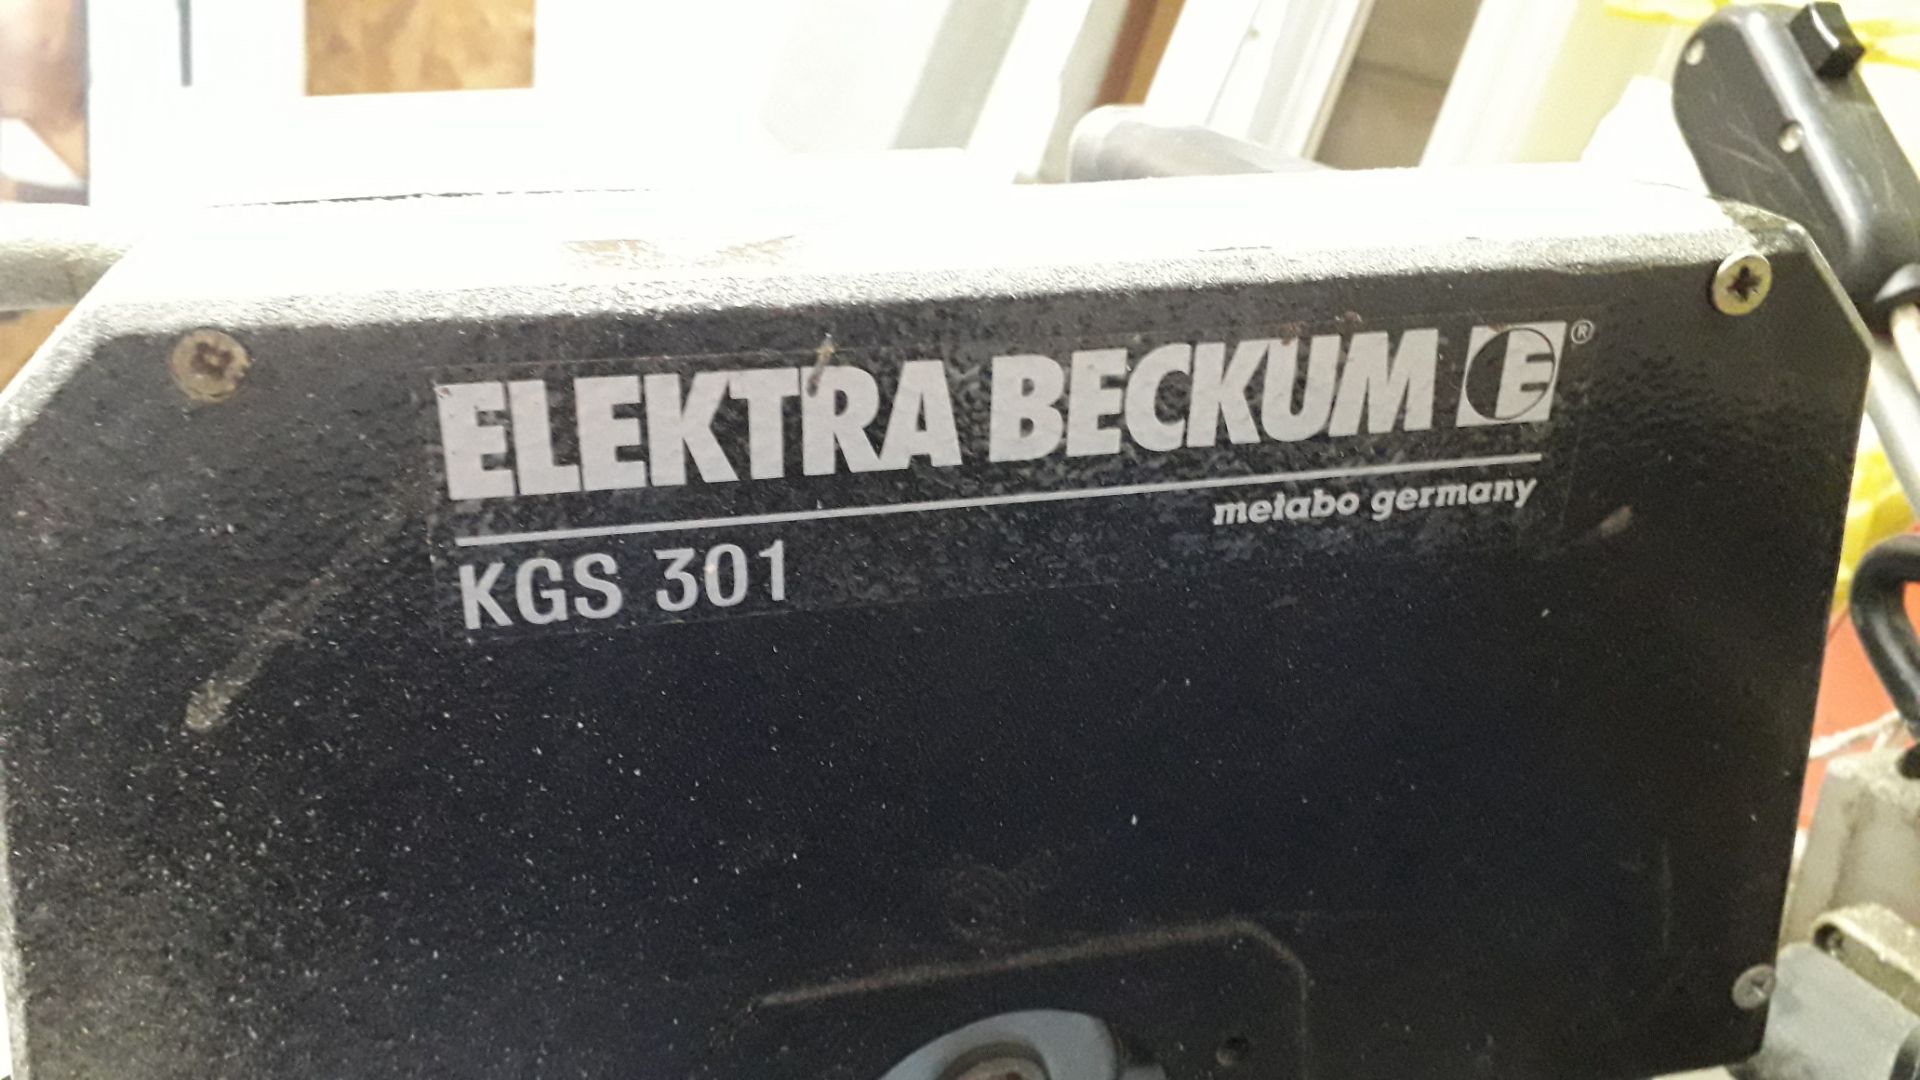 Elektru Beckum KGS301 240v Mitre Saw - Image 3 of 4